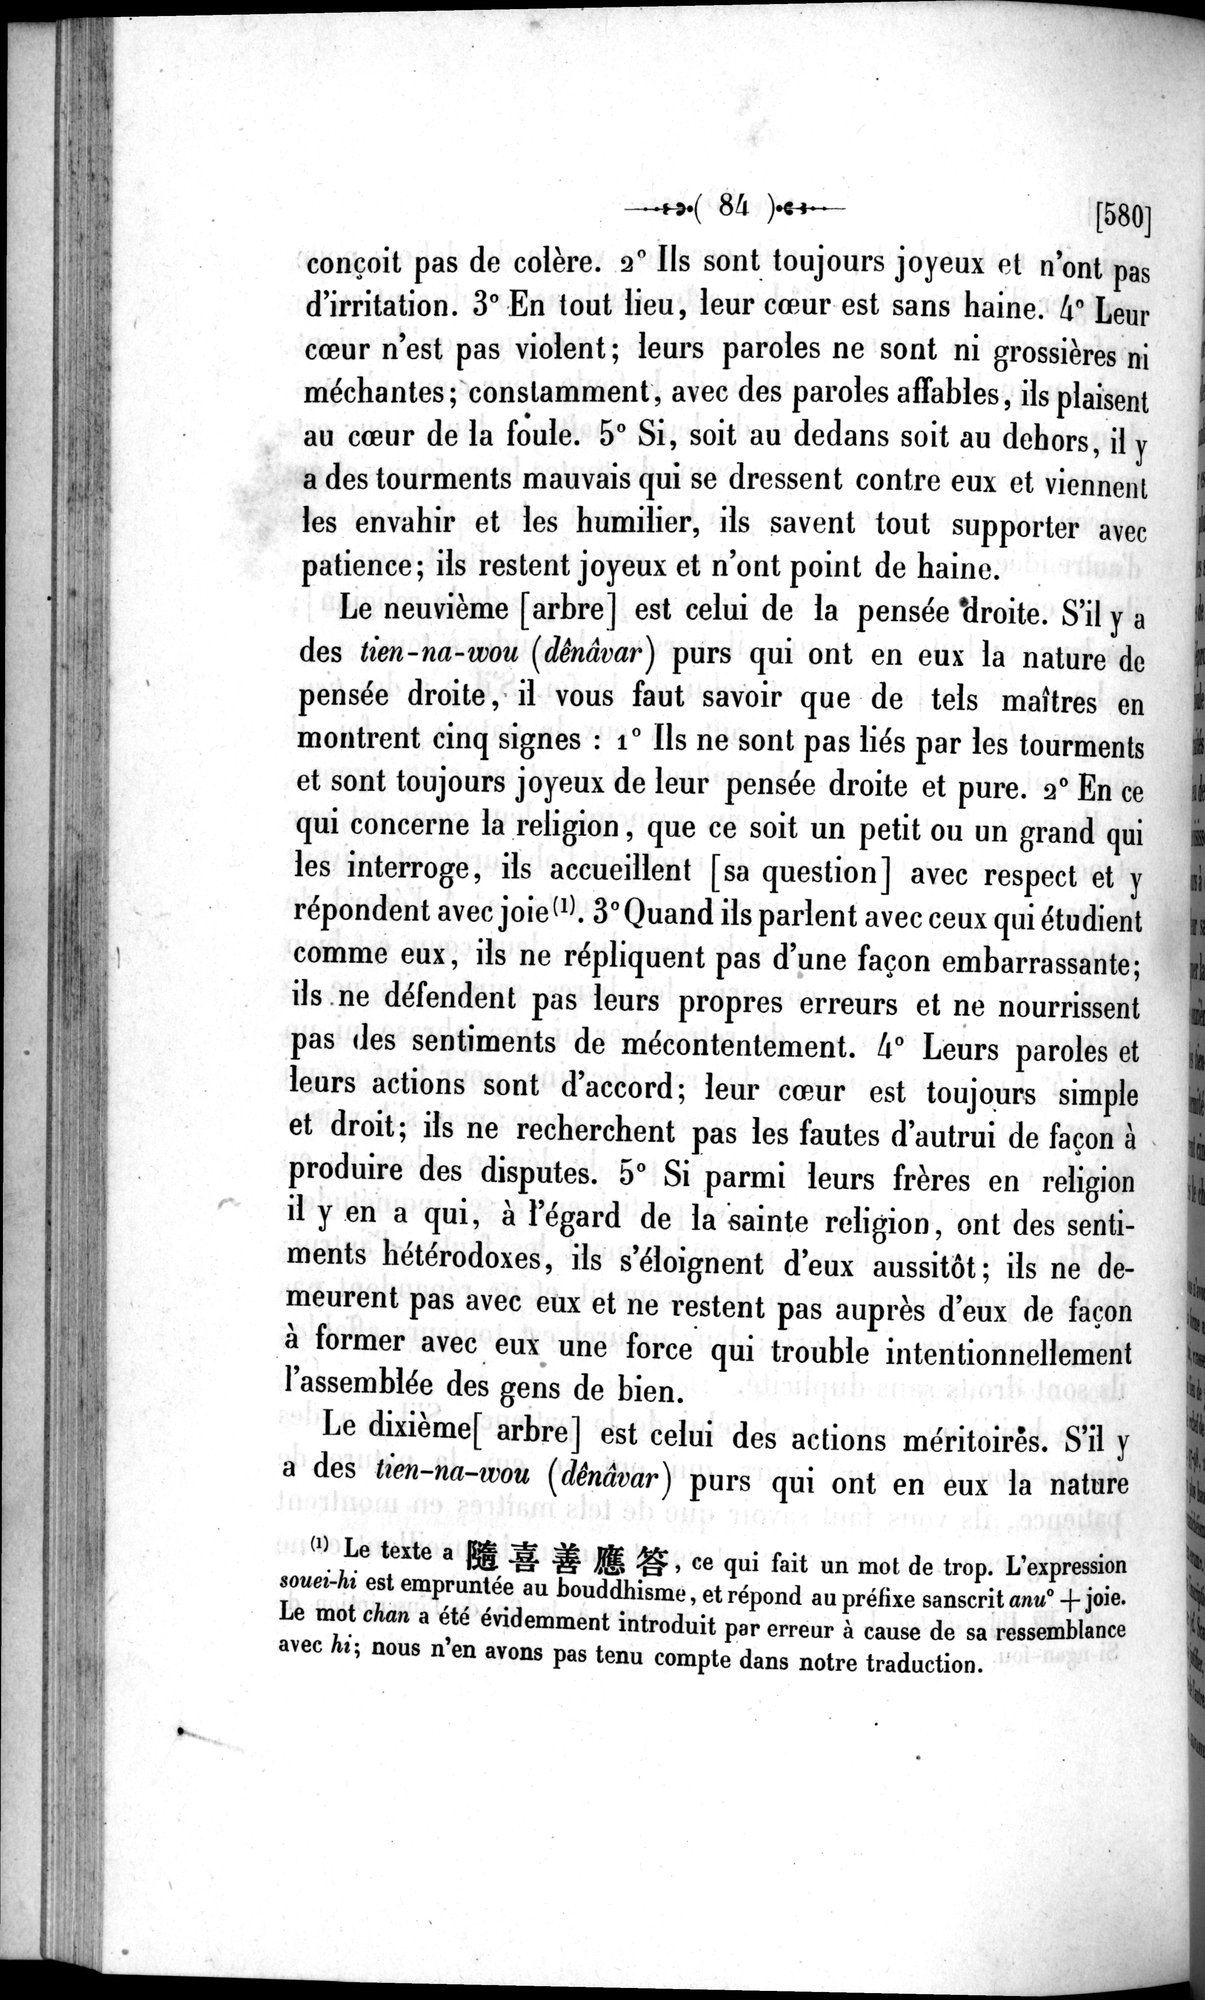 Un traité manichéen retrouvé en Chine : vol.1 / Page 94 (Grayscale High Resolution Image)